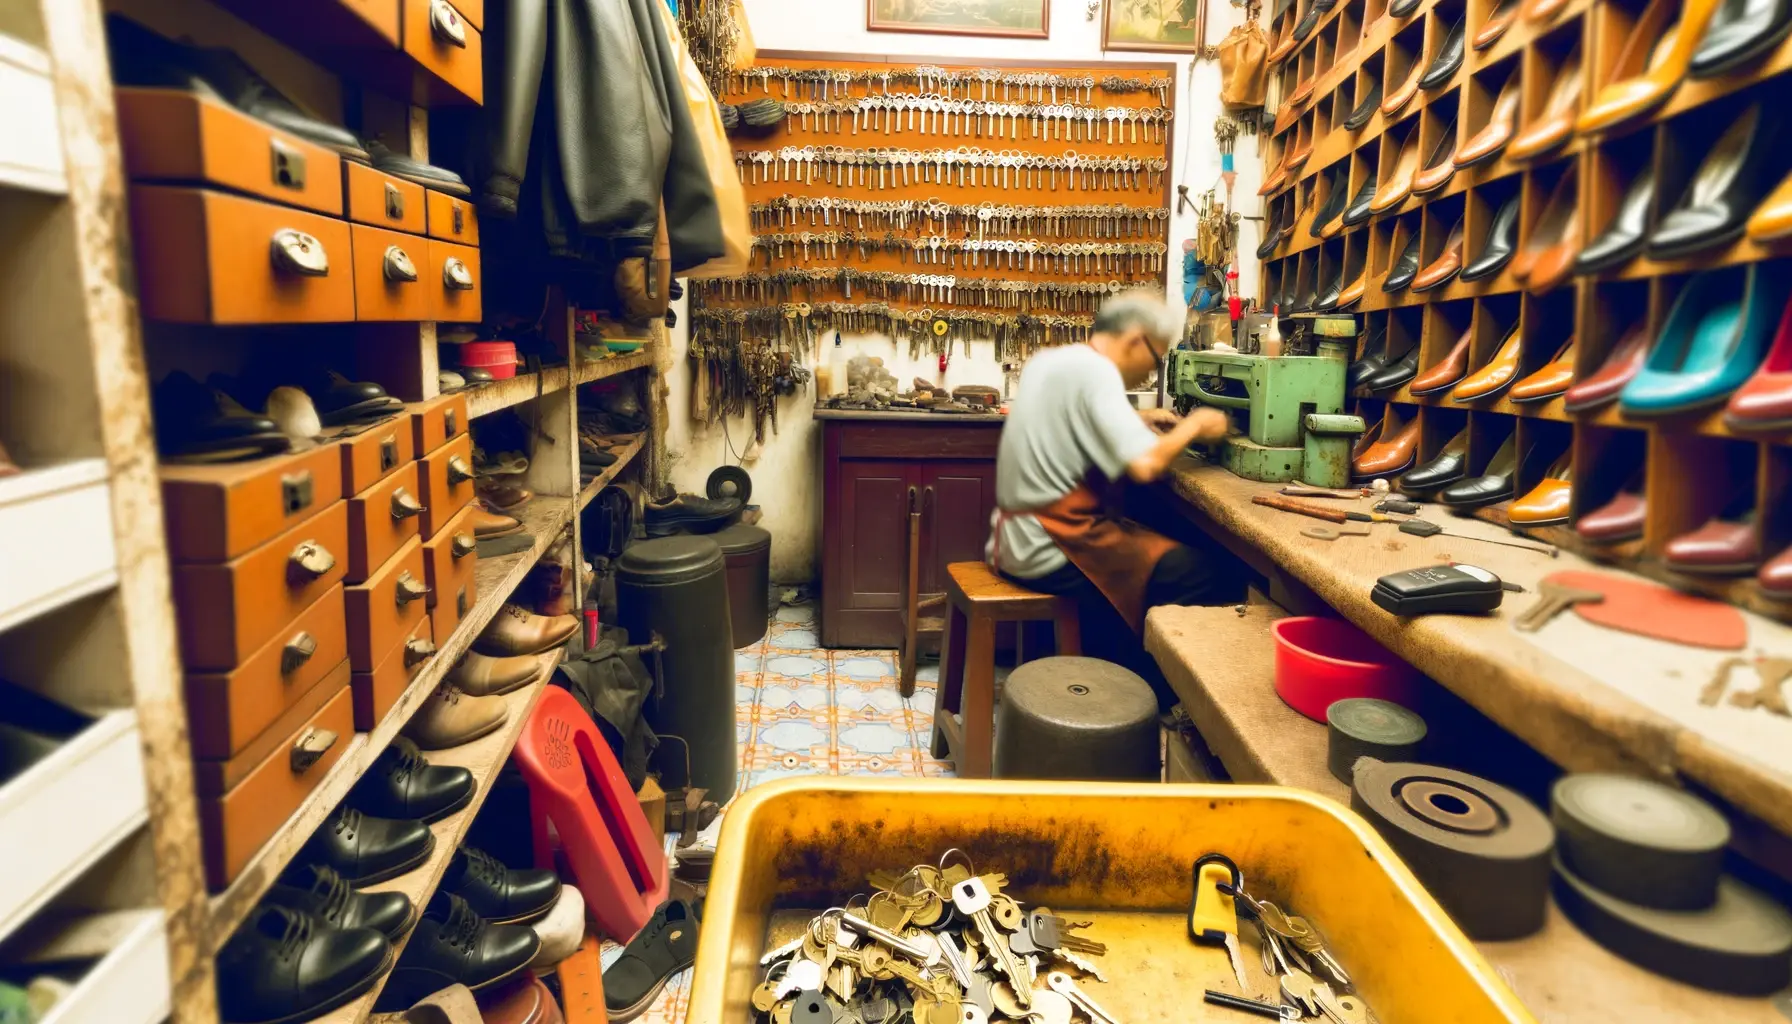 širokoúhlý obrázek zobrazující interiér rušné dílny na opravu obuvi a duplikaci klíčů